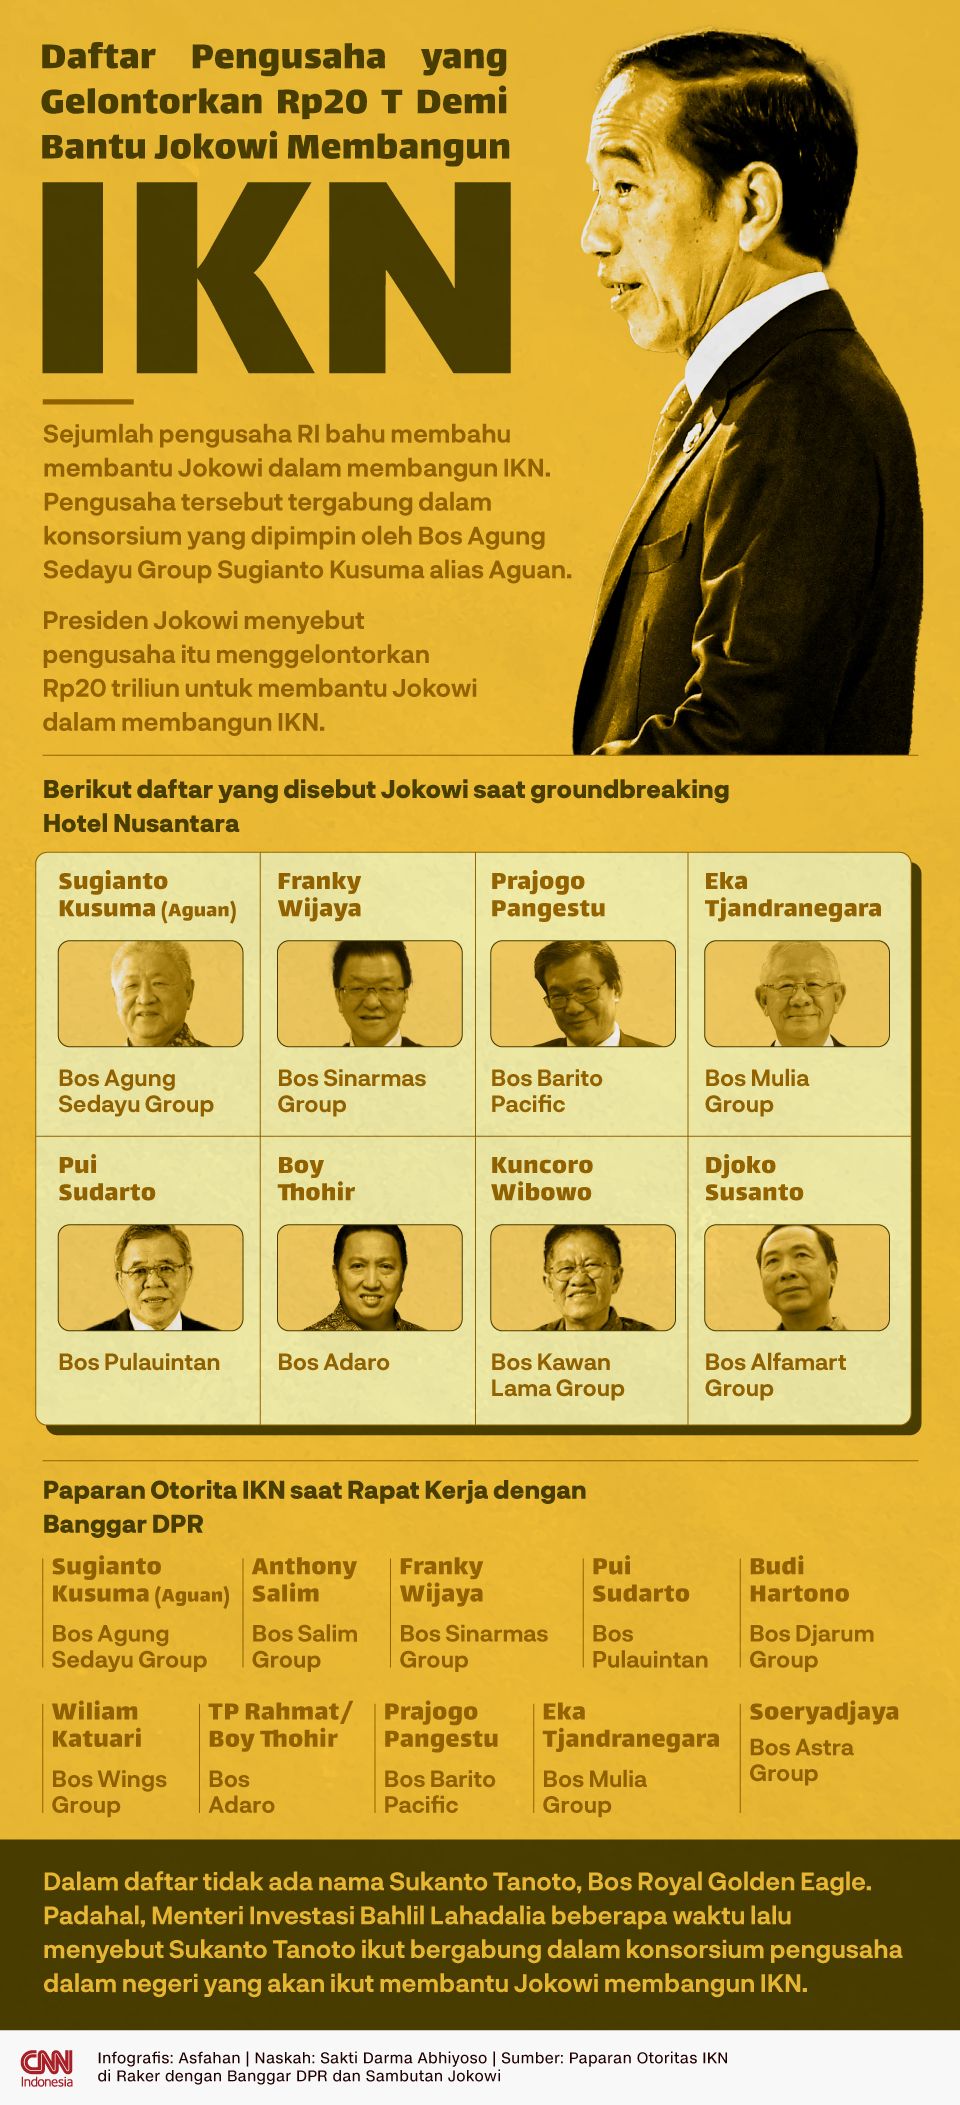 Infografis Daftar Pengusaha yang Gelontorkan Rp20 T Demi Bantu Jokowi Membangun IKN